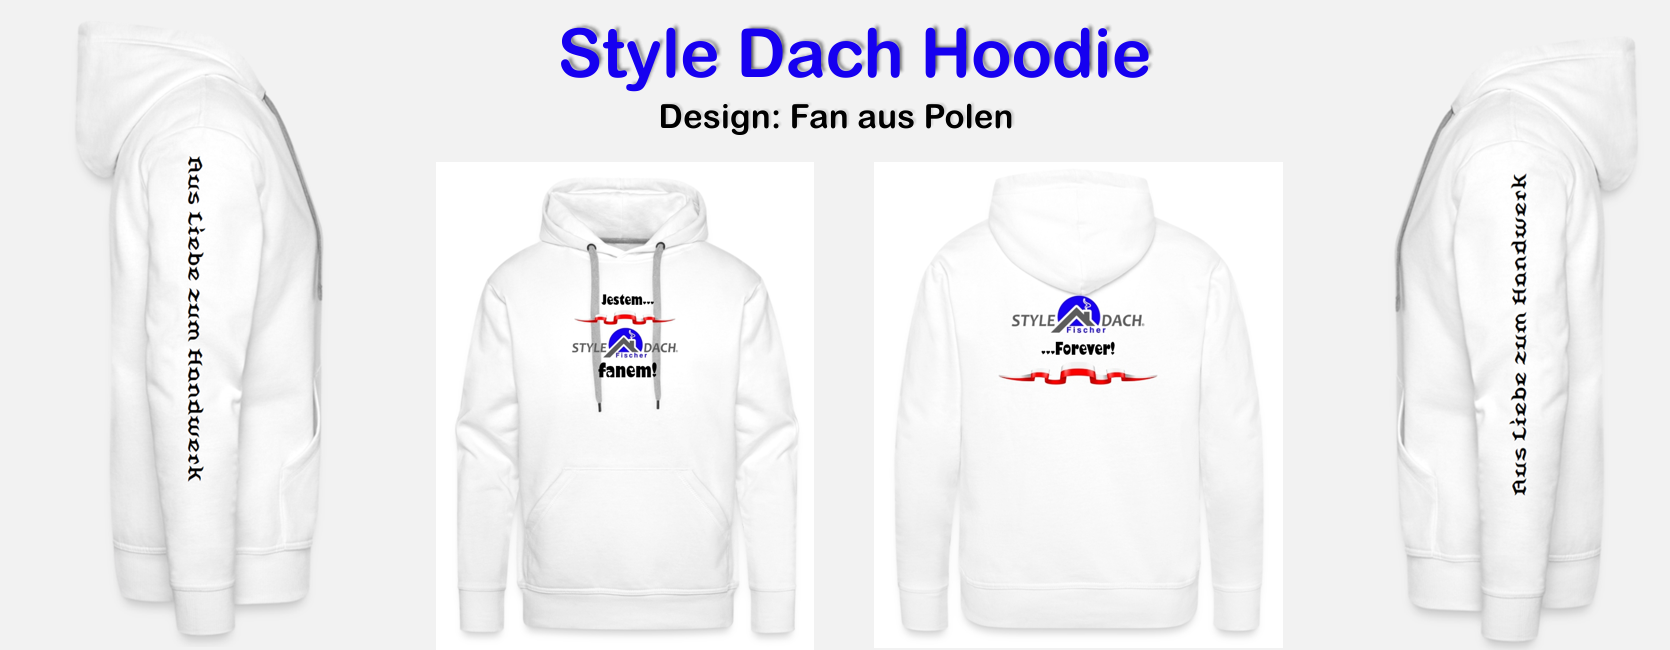 jetem fanem - Hoodie für polnische Style dach Fans